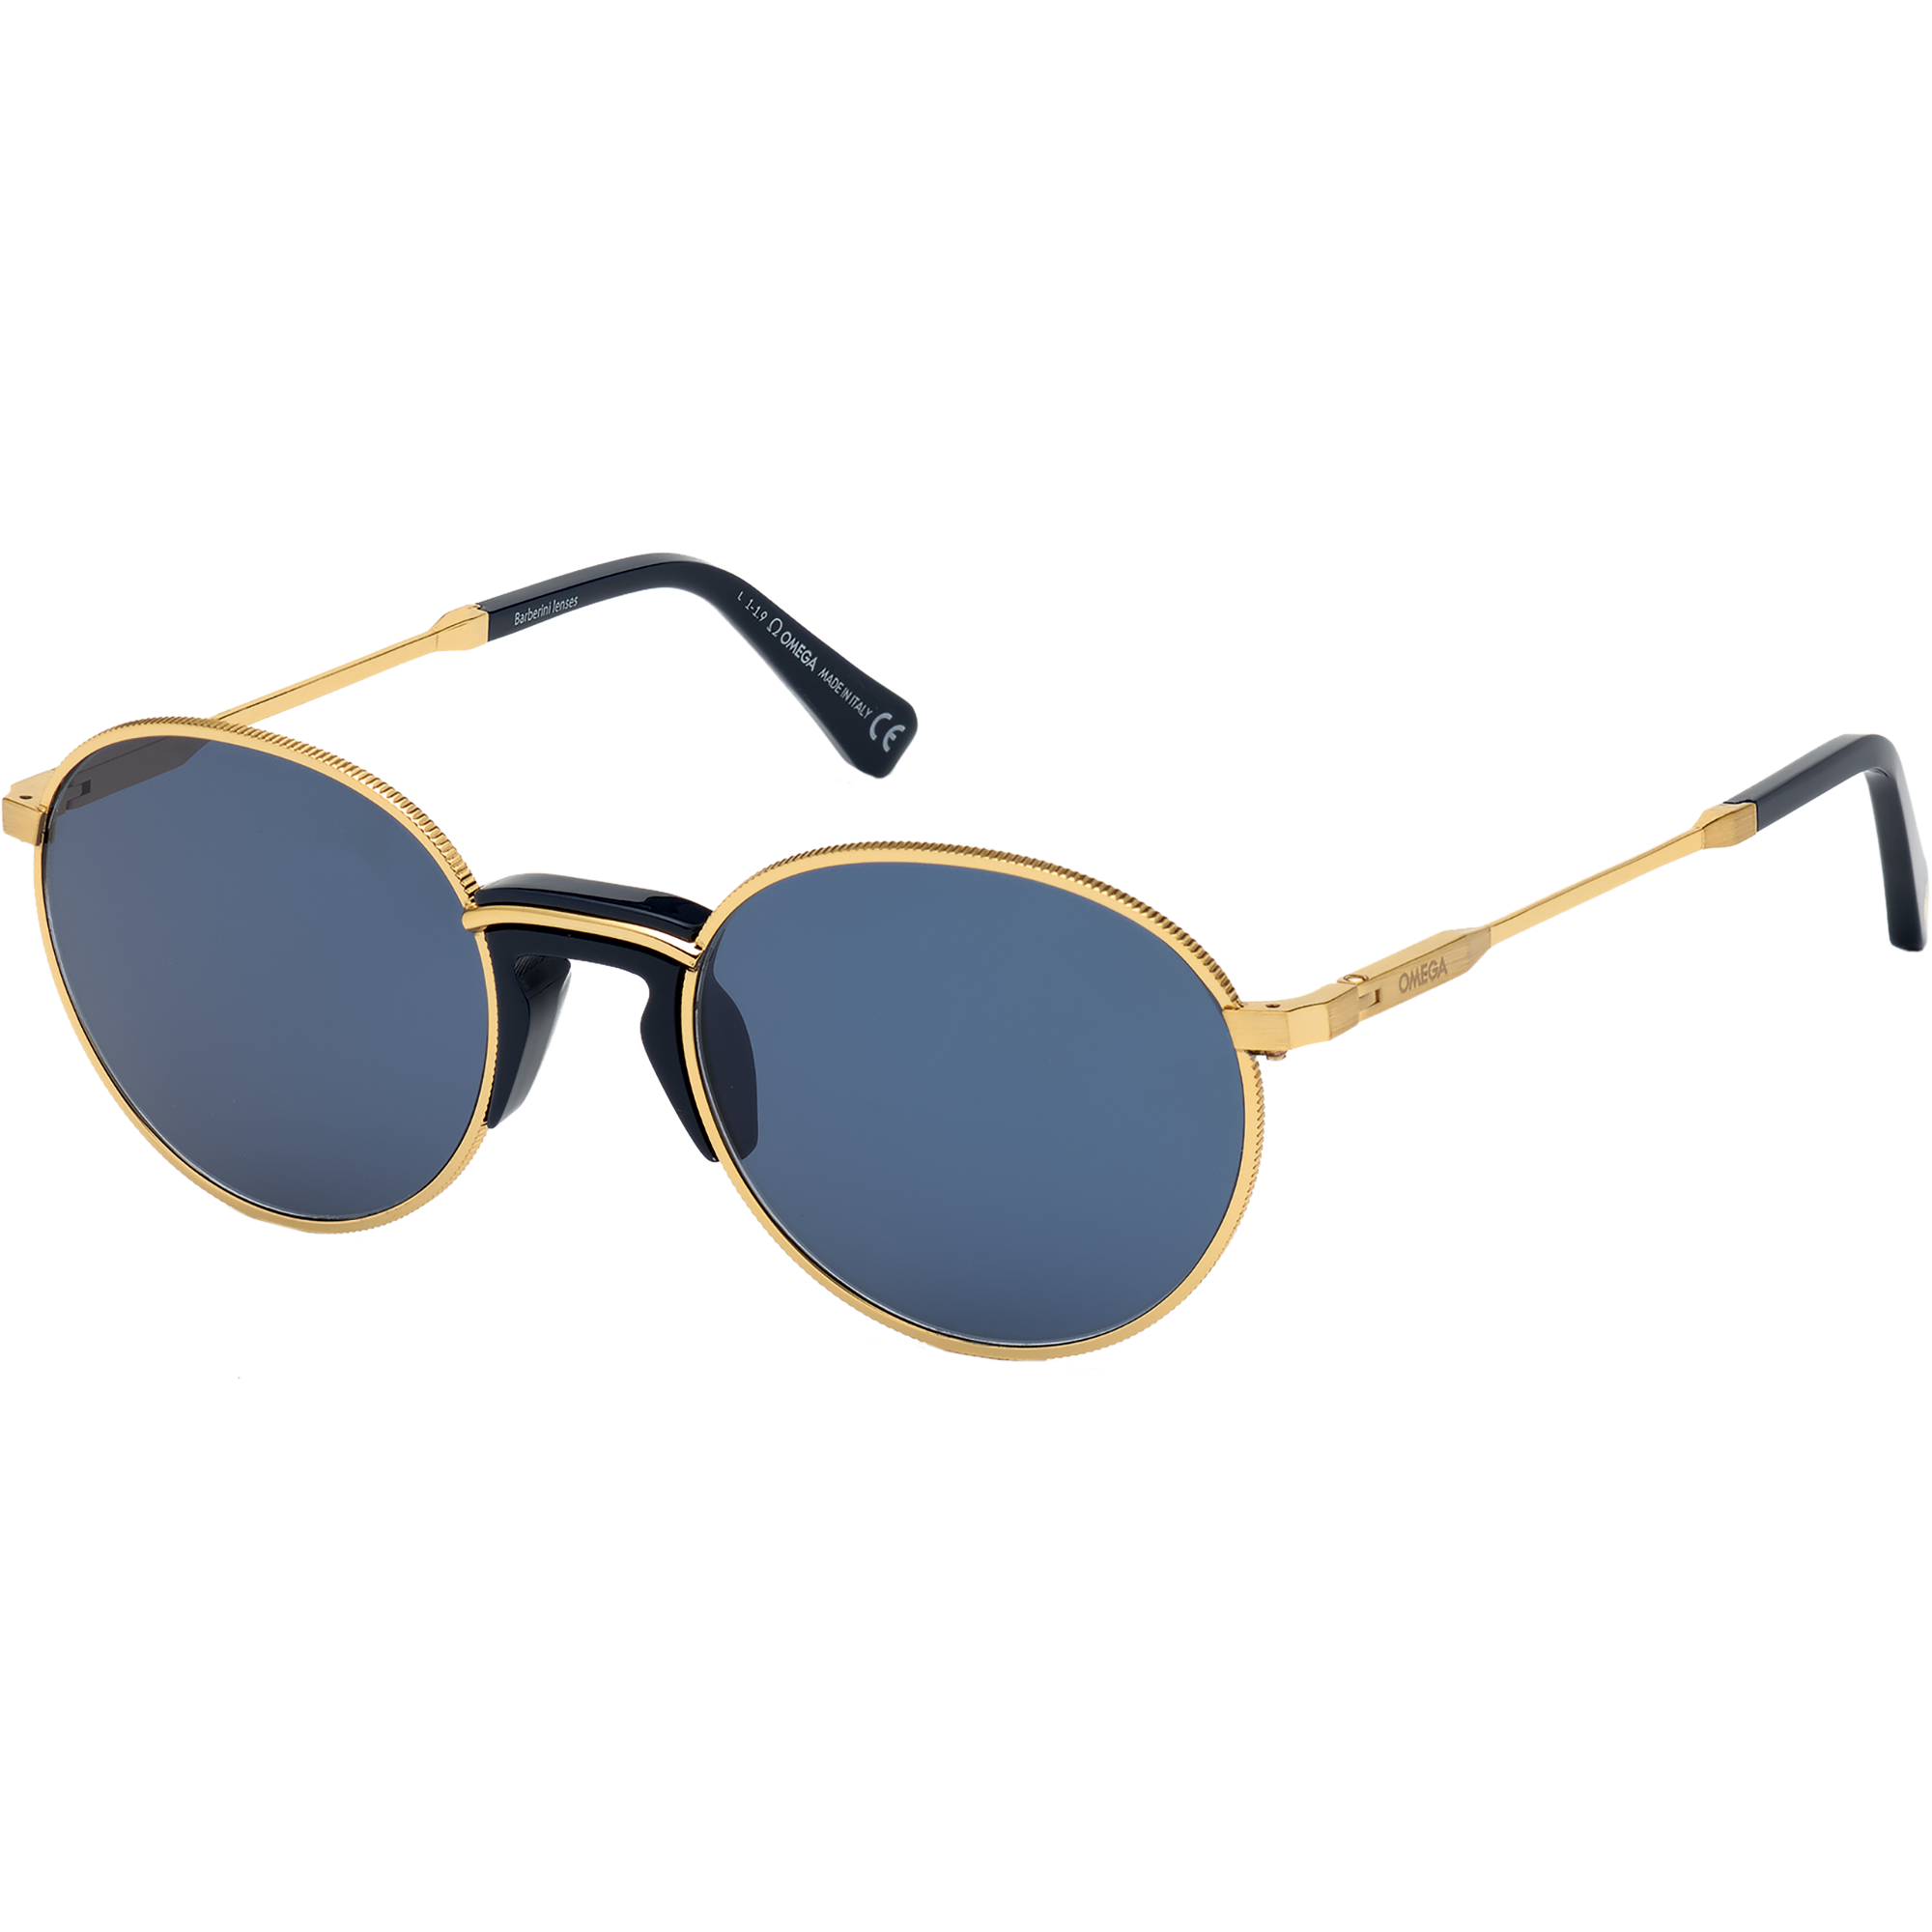 Солнцезащитные очки - Круглая форма, МУЖСКИЕ ОЧКИ - OM0019-H5330V